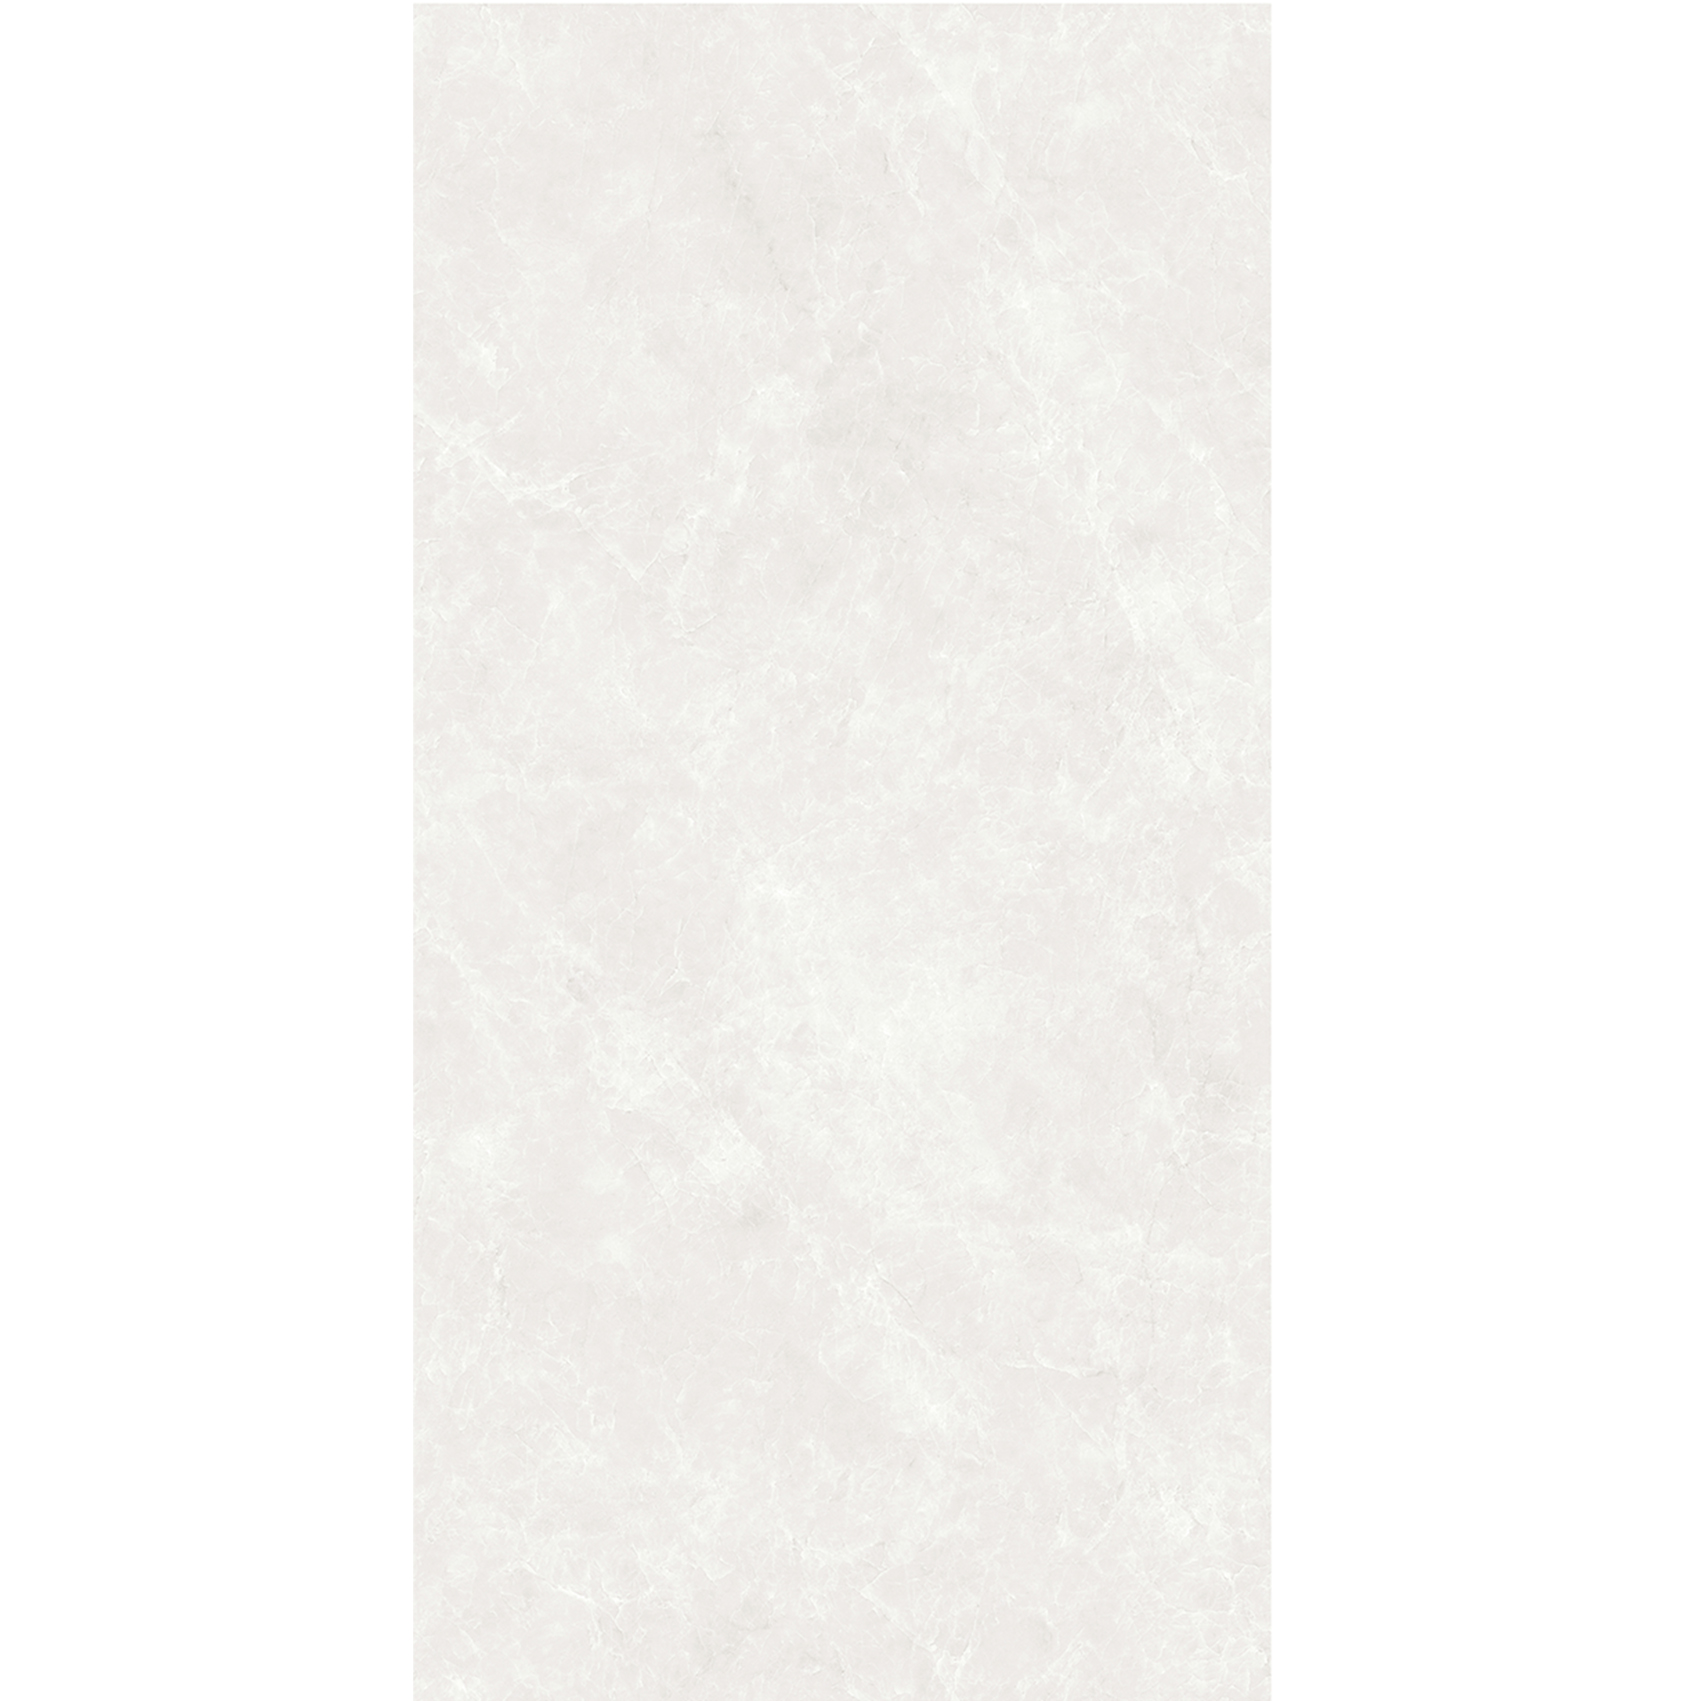 wall tiles for shower manufacturer marble porcelain marble tile